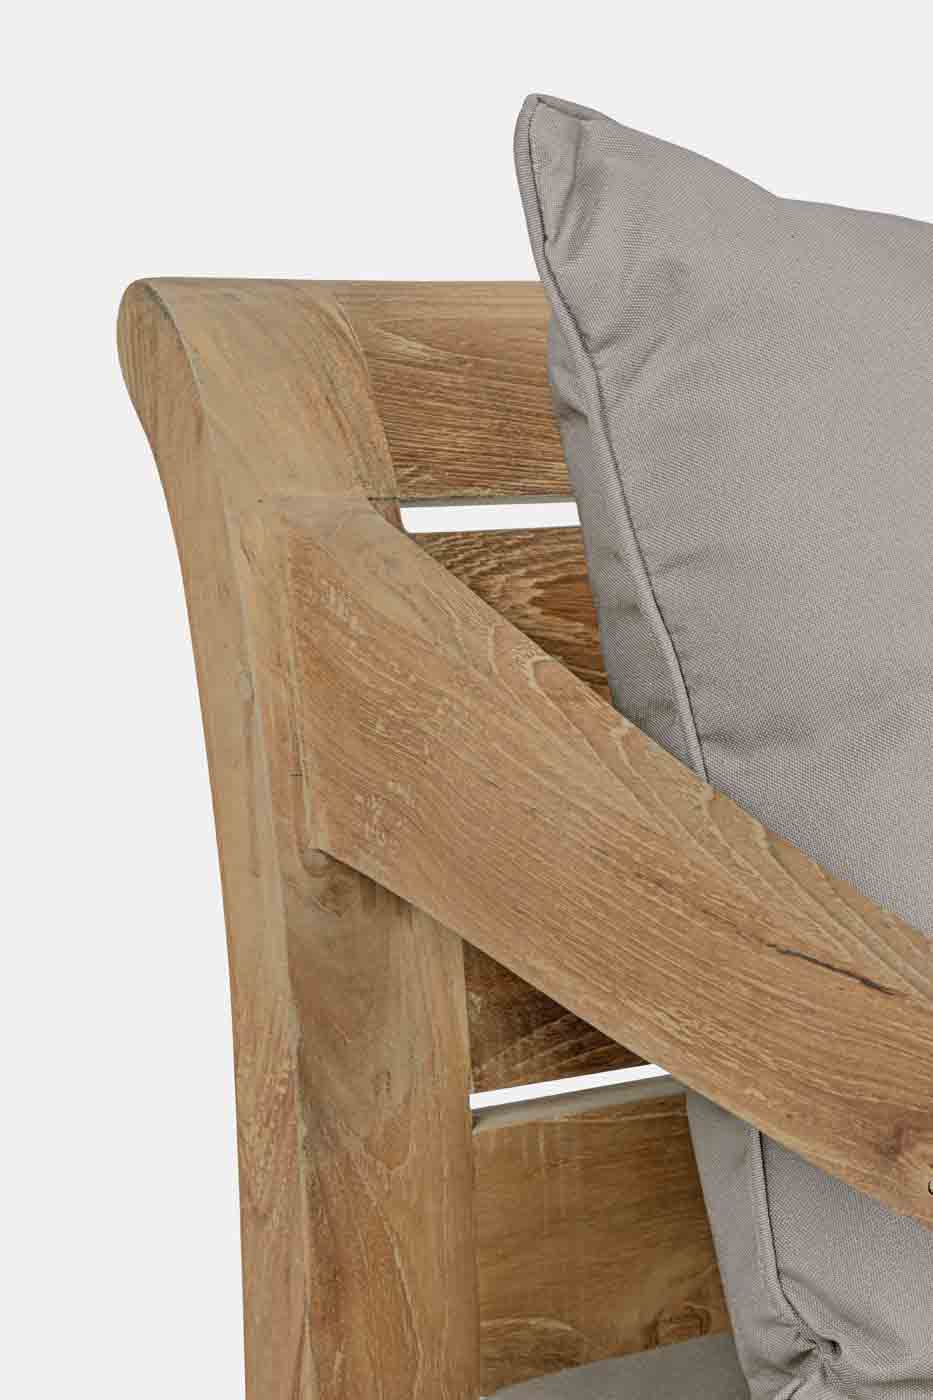 Das 2 Sitzer Sofa Karuba wird aus einem Gestell aus Teakholz gefertigt. Die Kissen sind abnehmbar und leicht zu reinigen